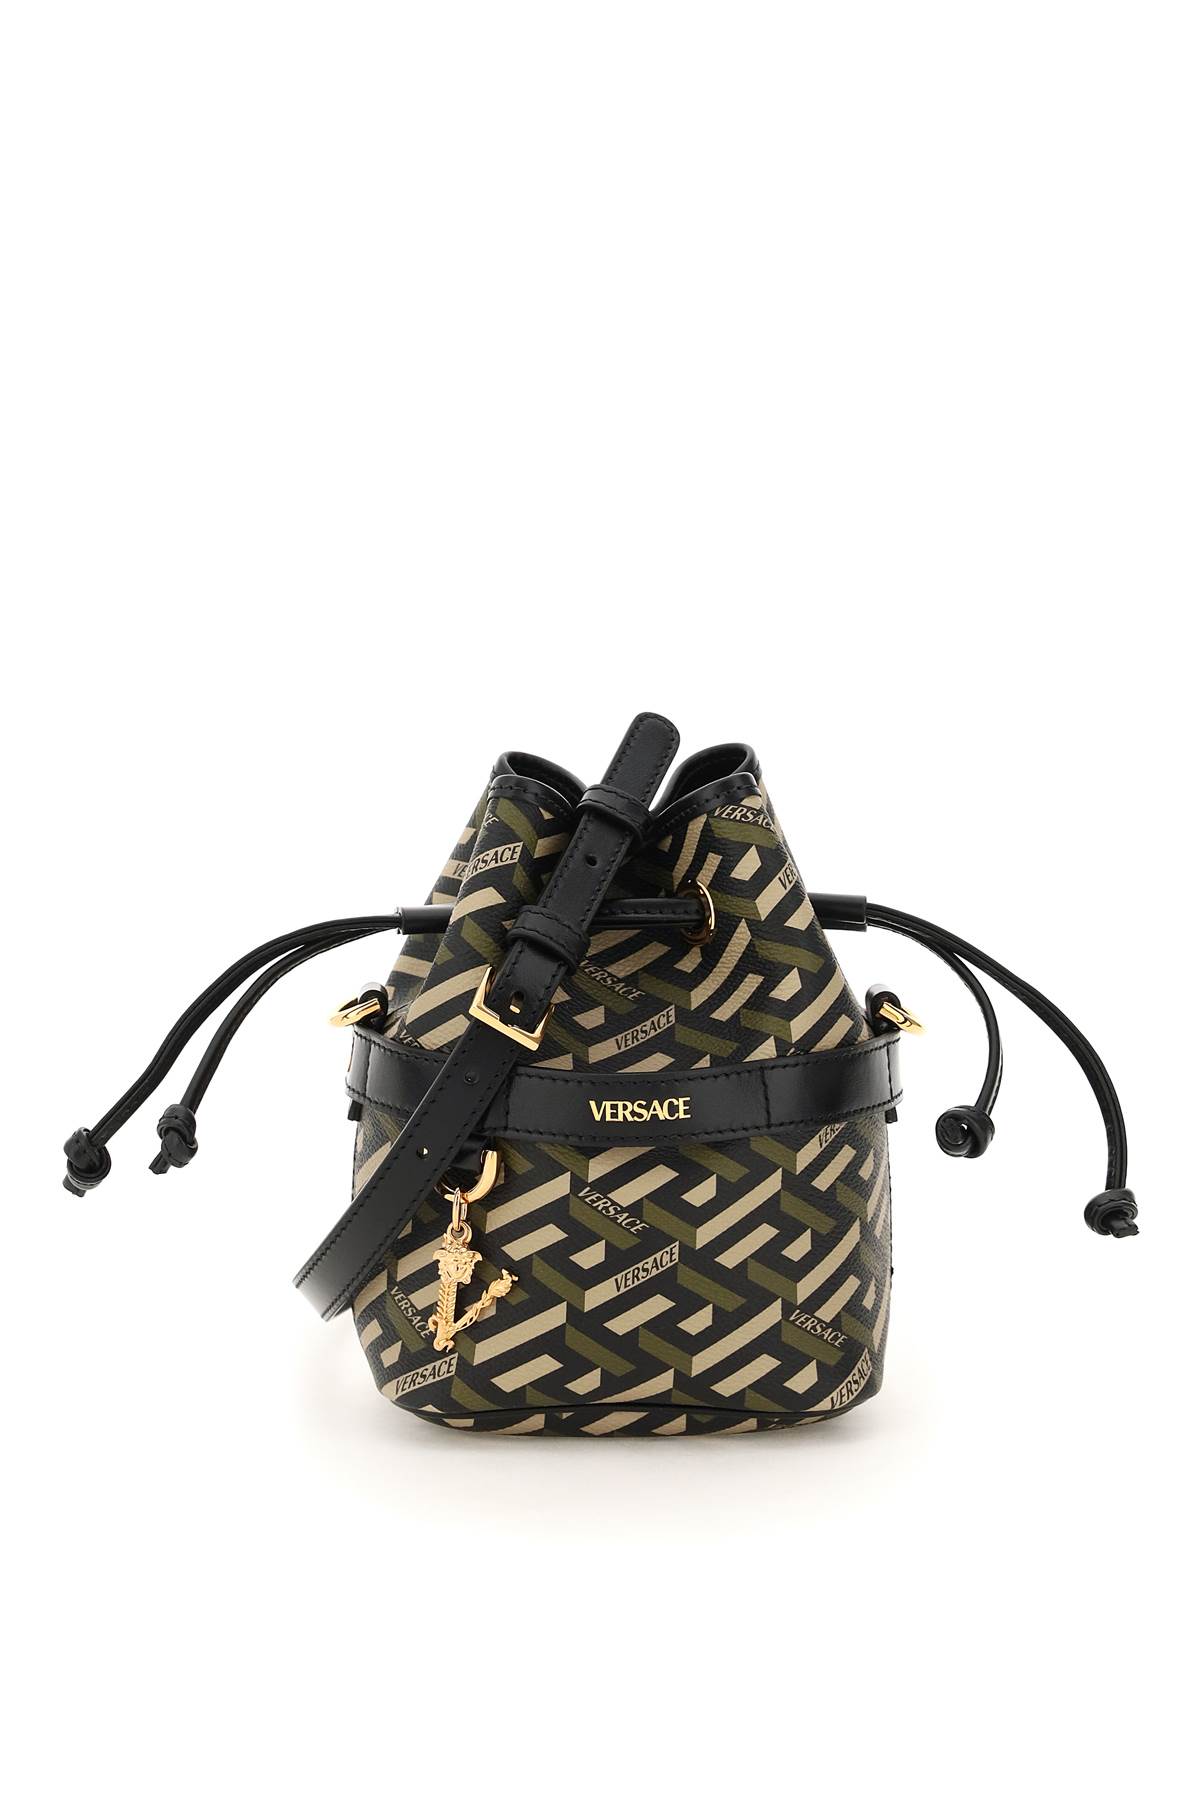 Versace La Greca Signature Mini Bucket Bag